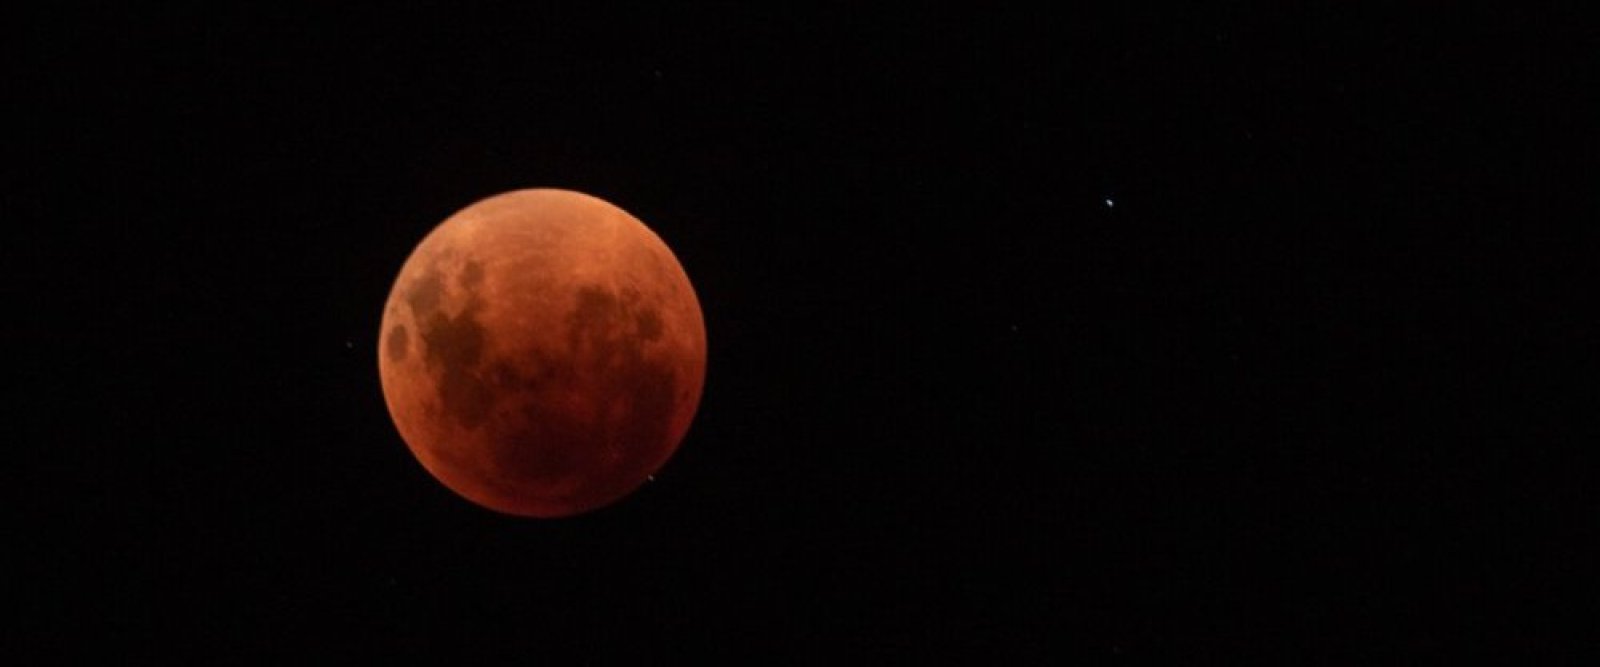 Calendario astronómico de marzo contempla un eclipse lunar y el paso de un cometa